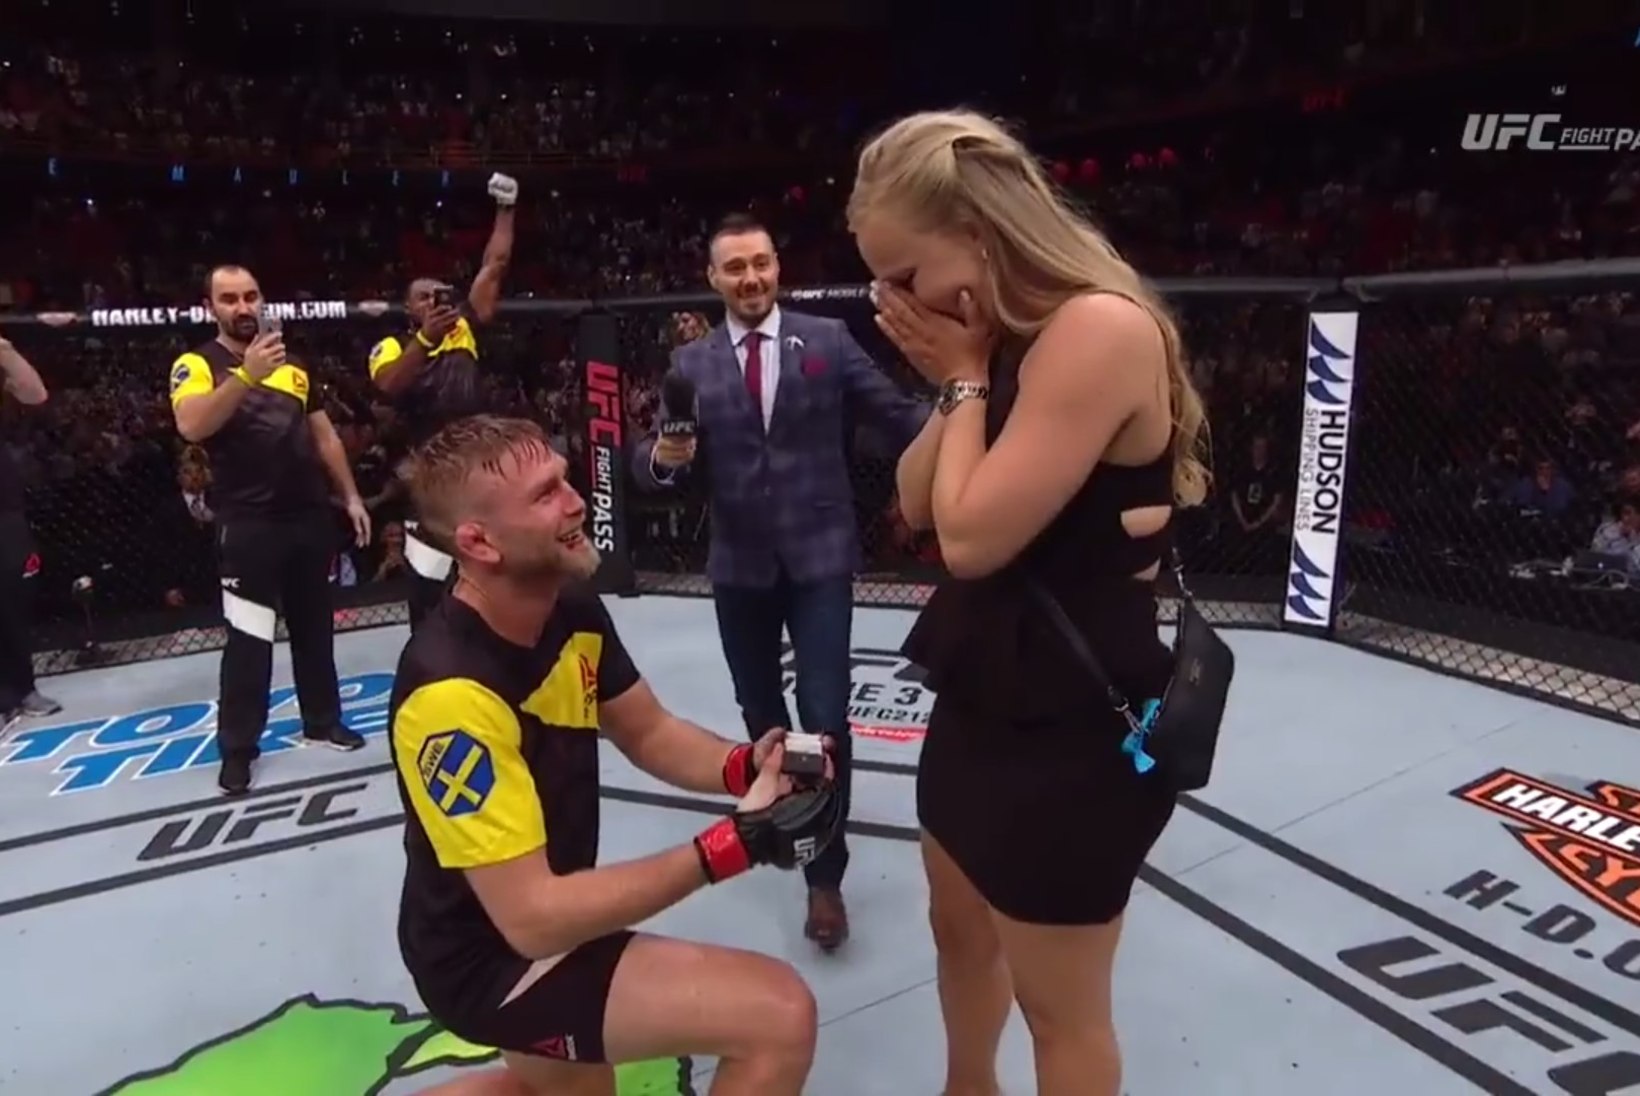 ARMAS VIDEO | Rootsi MMA-staar tegi pärast nokaudiga võitmist tüdruksõbrale abieluettepaneku